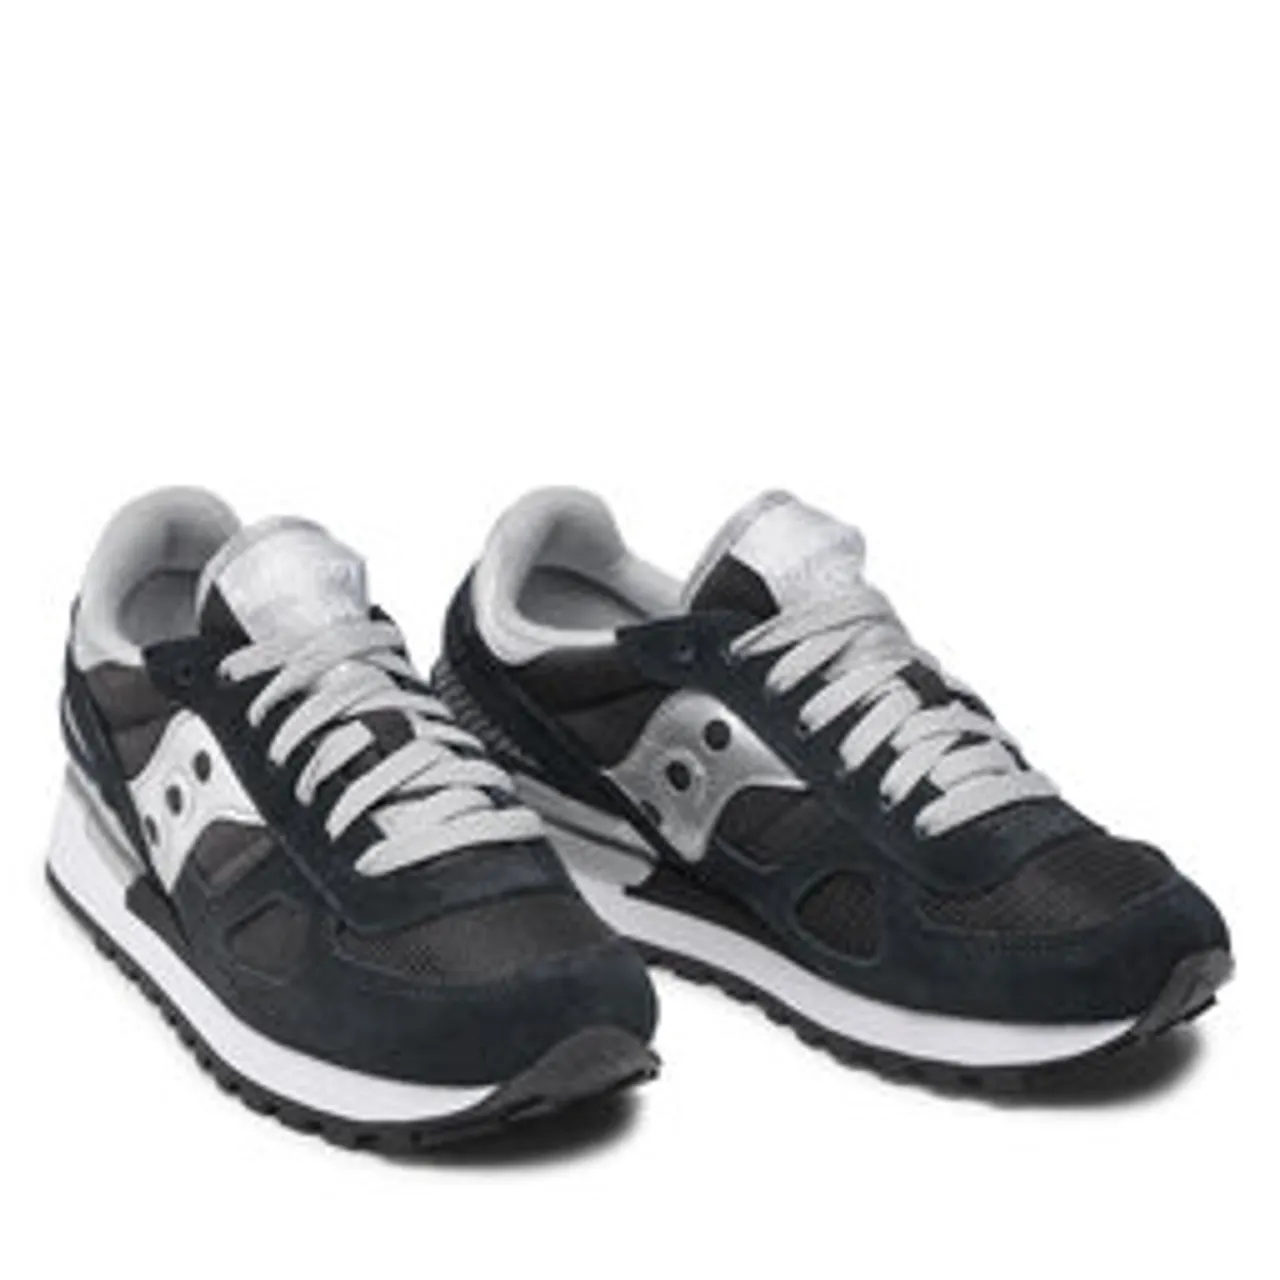 Sneakers Saucony Shadow Original S1108-671 Black/Silver